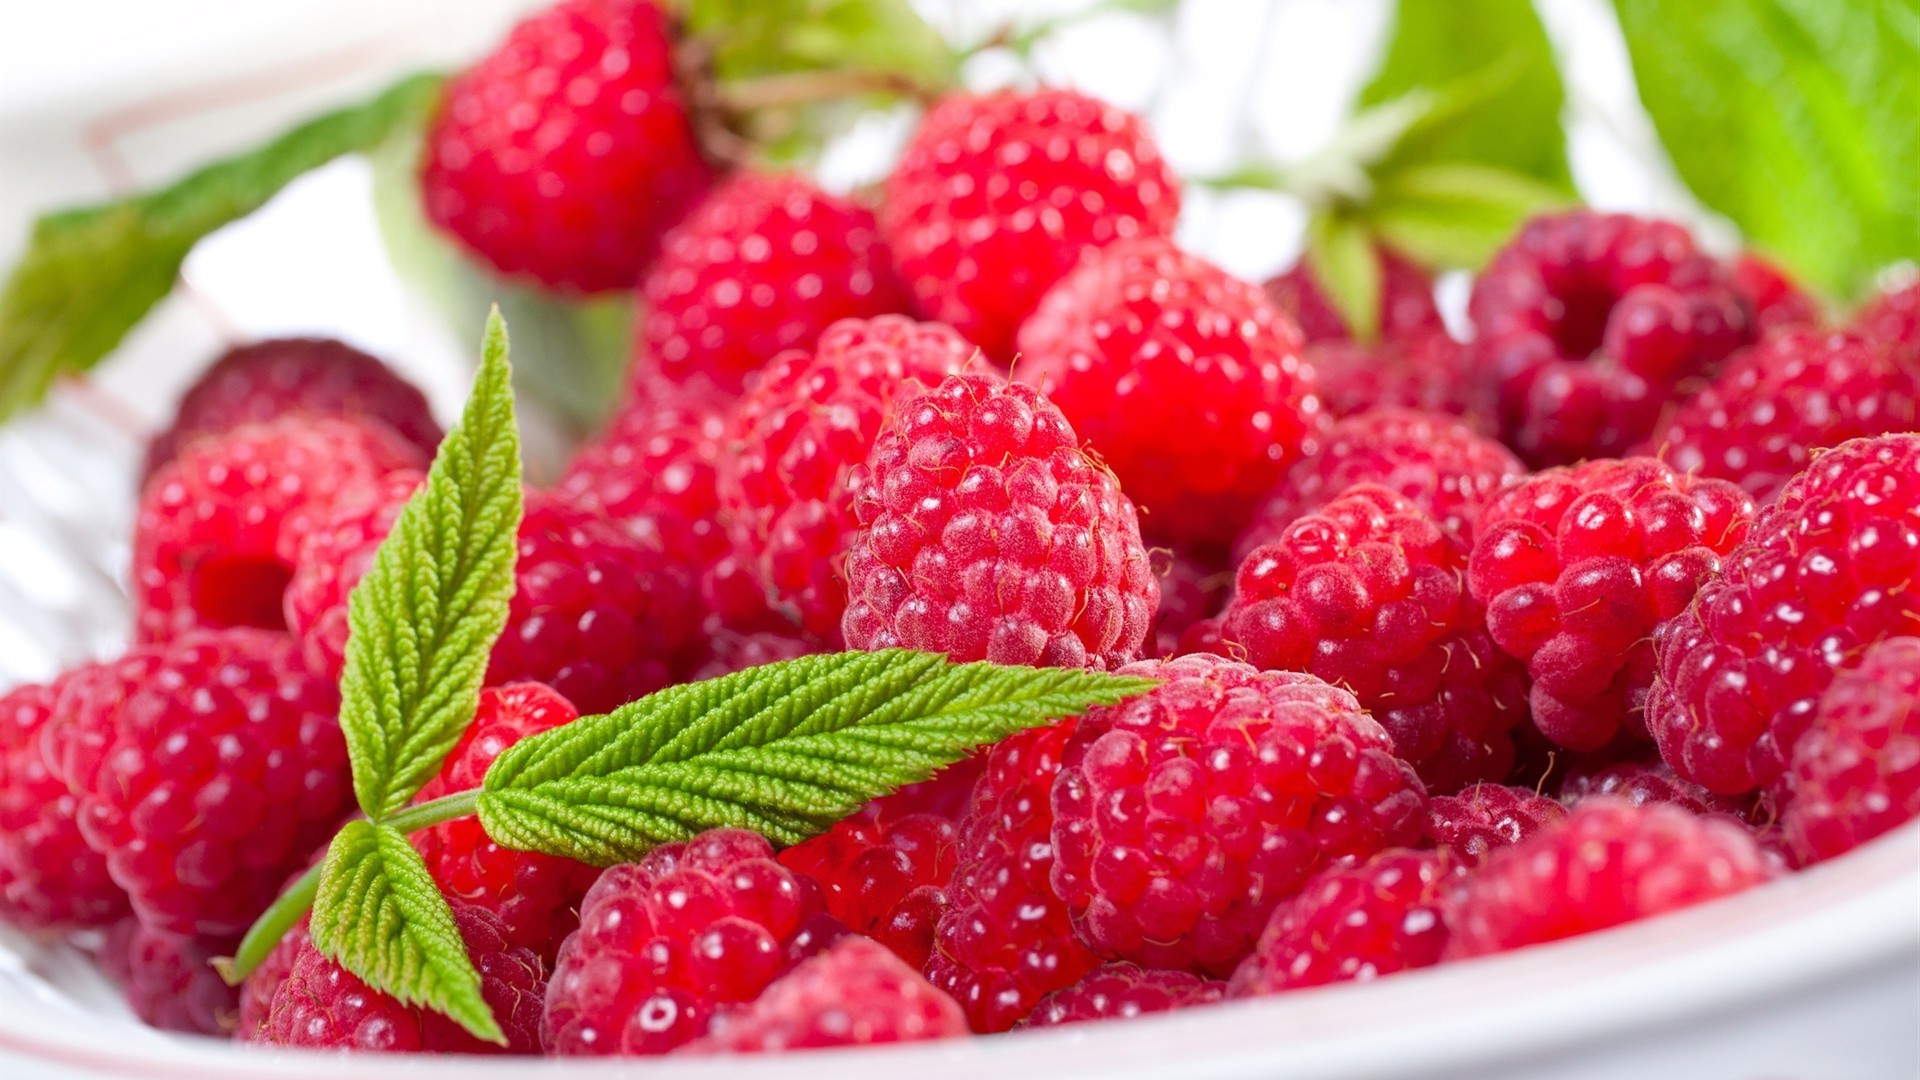 ягоды фрукты ягодка сочные сладкий еда вкусные здоровый здоровья малина клубничный вкусные лист питание диета кондитерское изделие освежение свежесть эпикур витамин